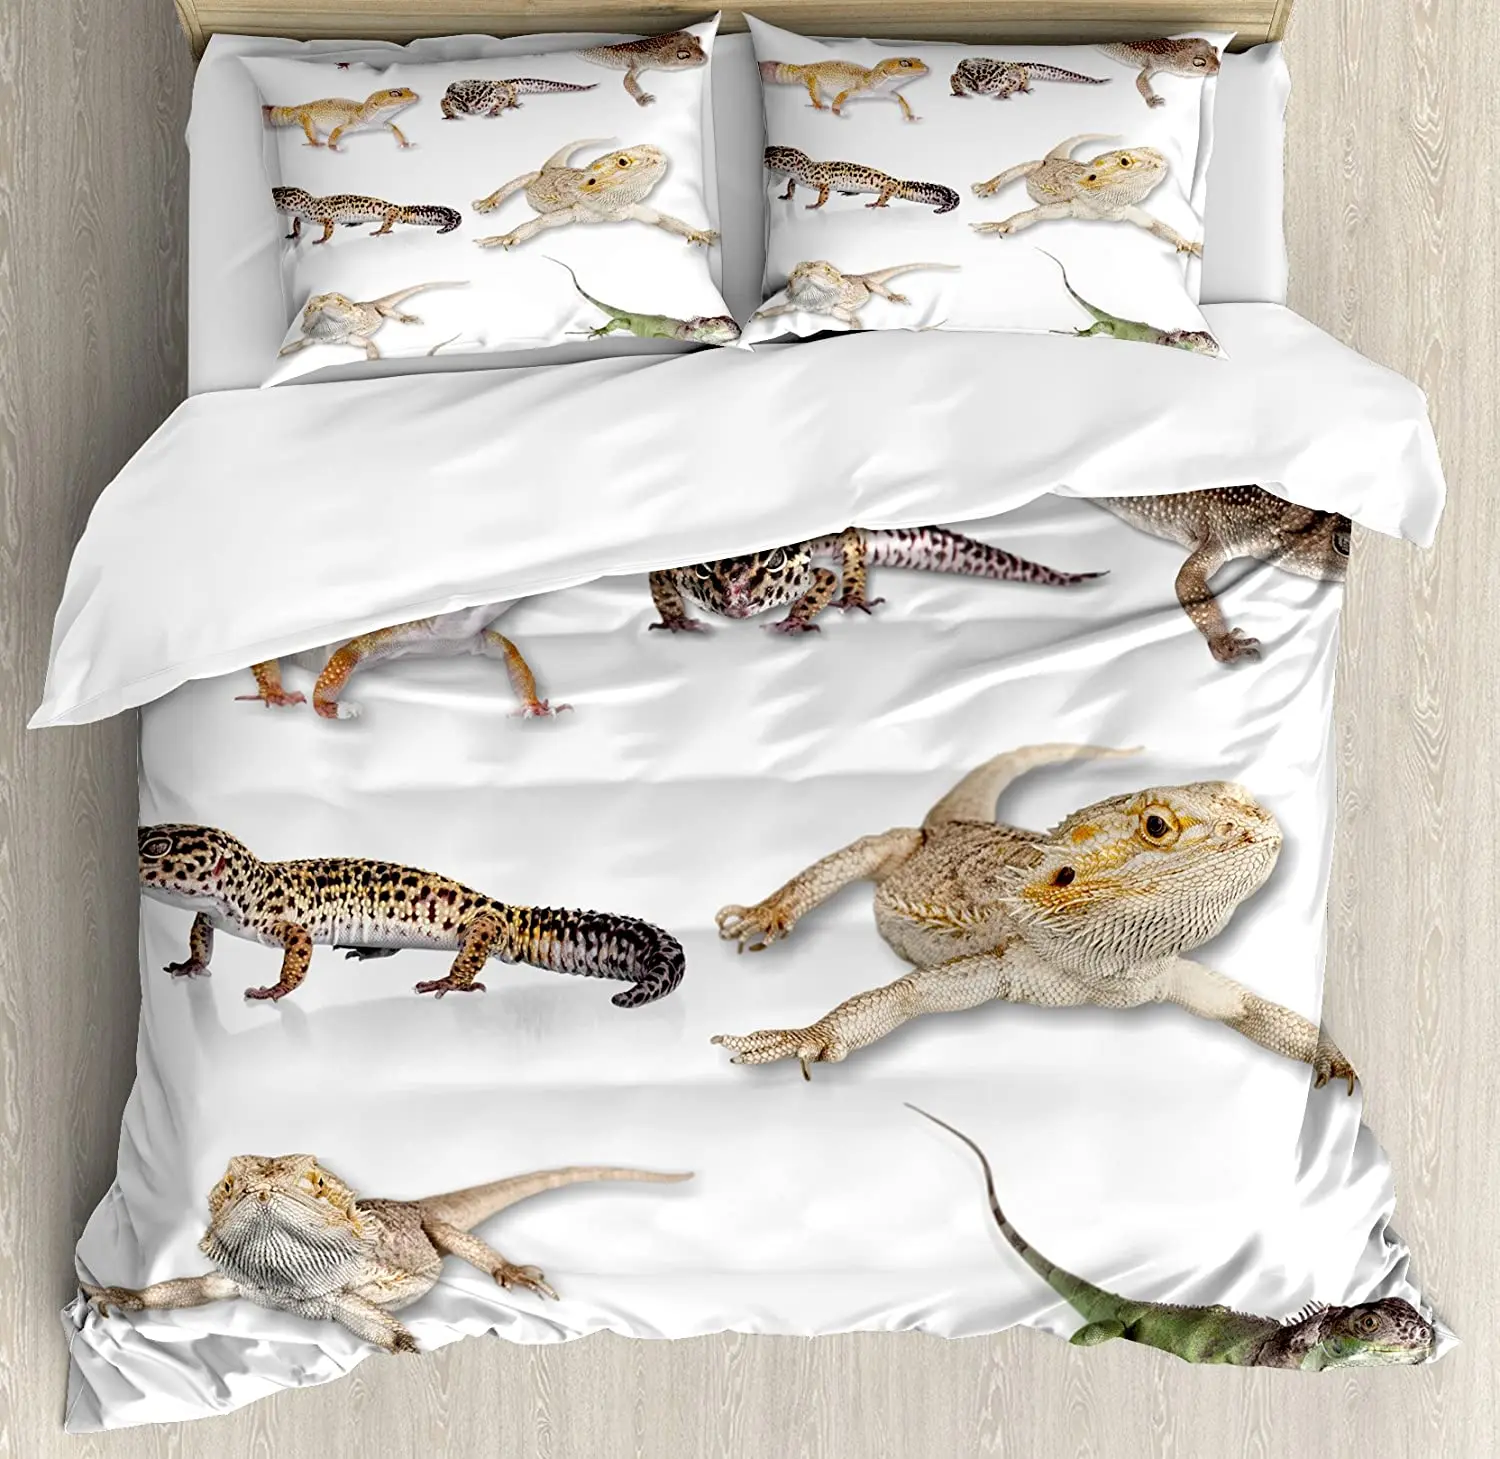 

Комплект постельного белья с рептилиями для спальни, кровати, дома, многоцветный, с леопардовым узором, семейный Imag, пододеяльник, пододеяль...